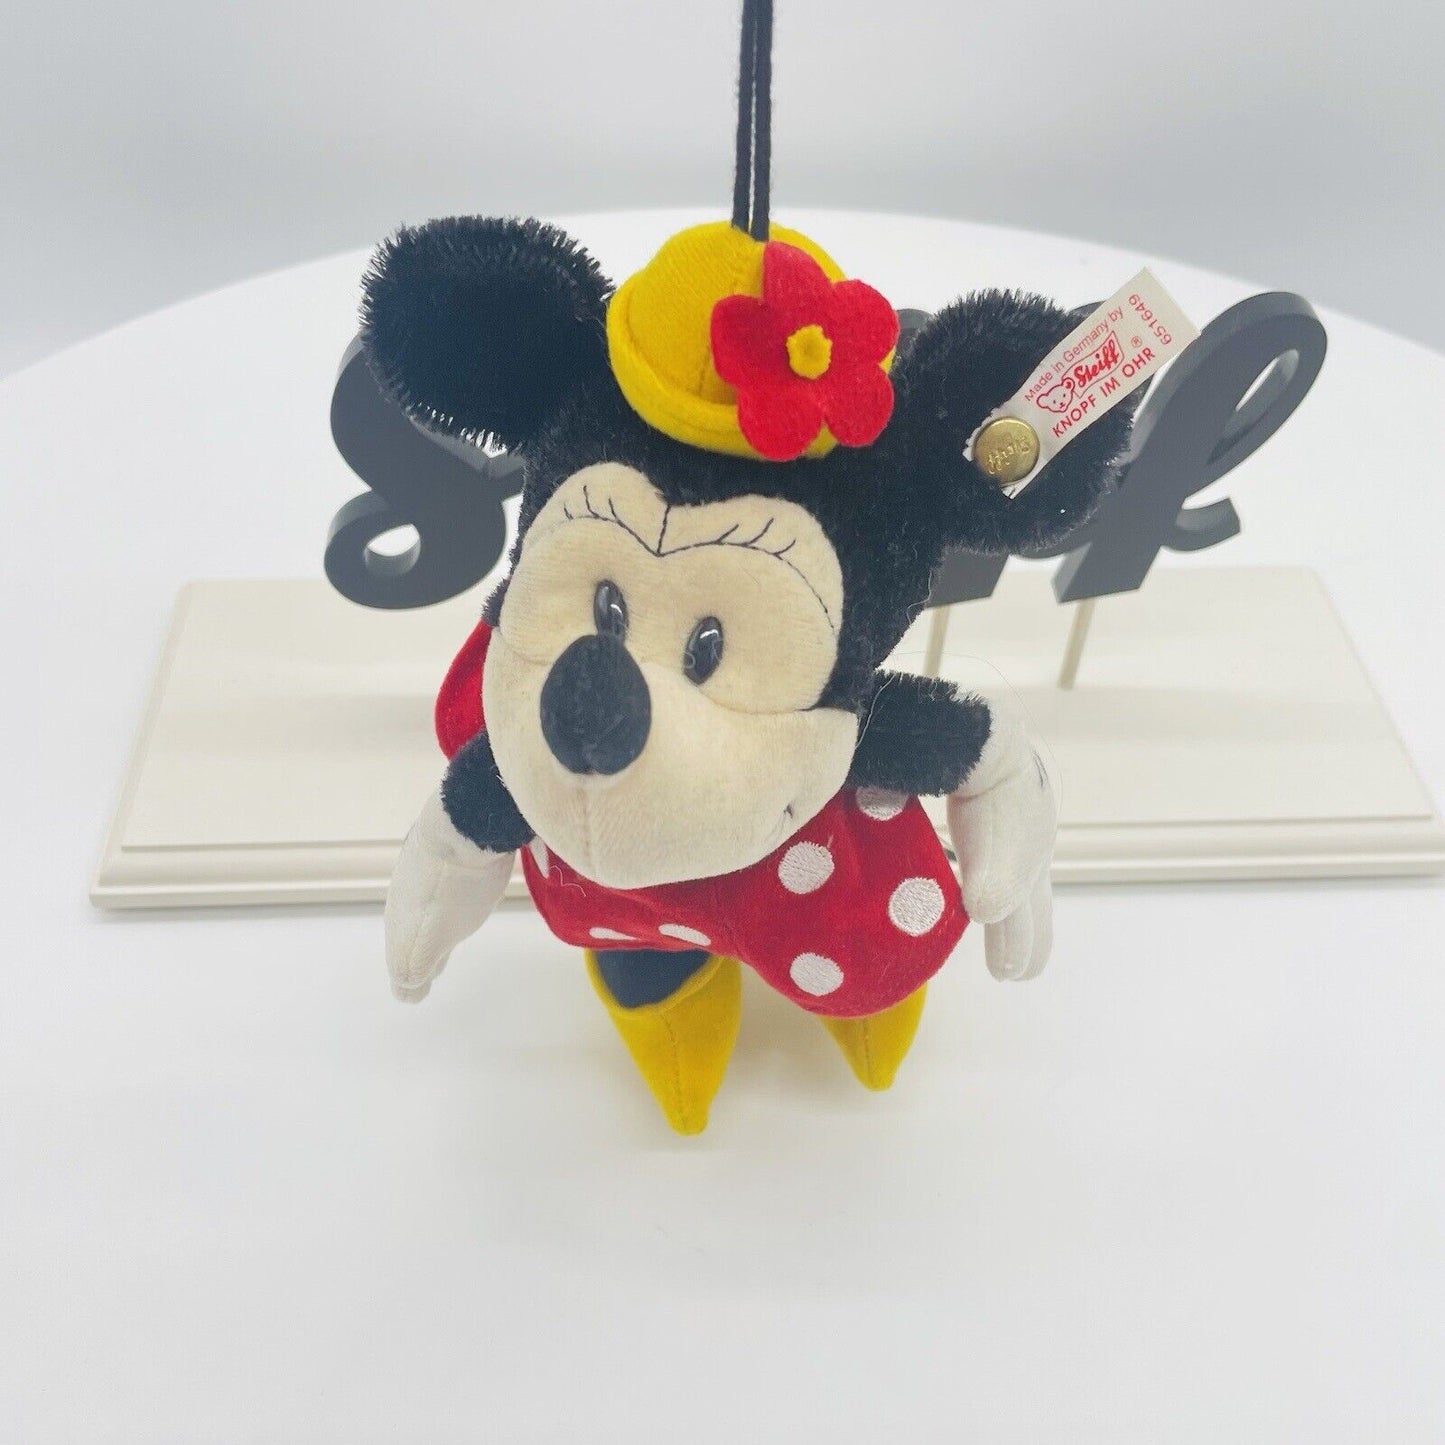 Steiff Disney Minnie Maus Ornament 651649 limitiert 1928 aus 1999 15cm Mohair